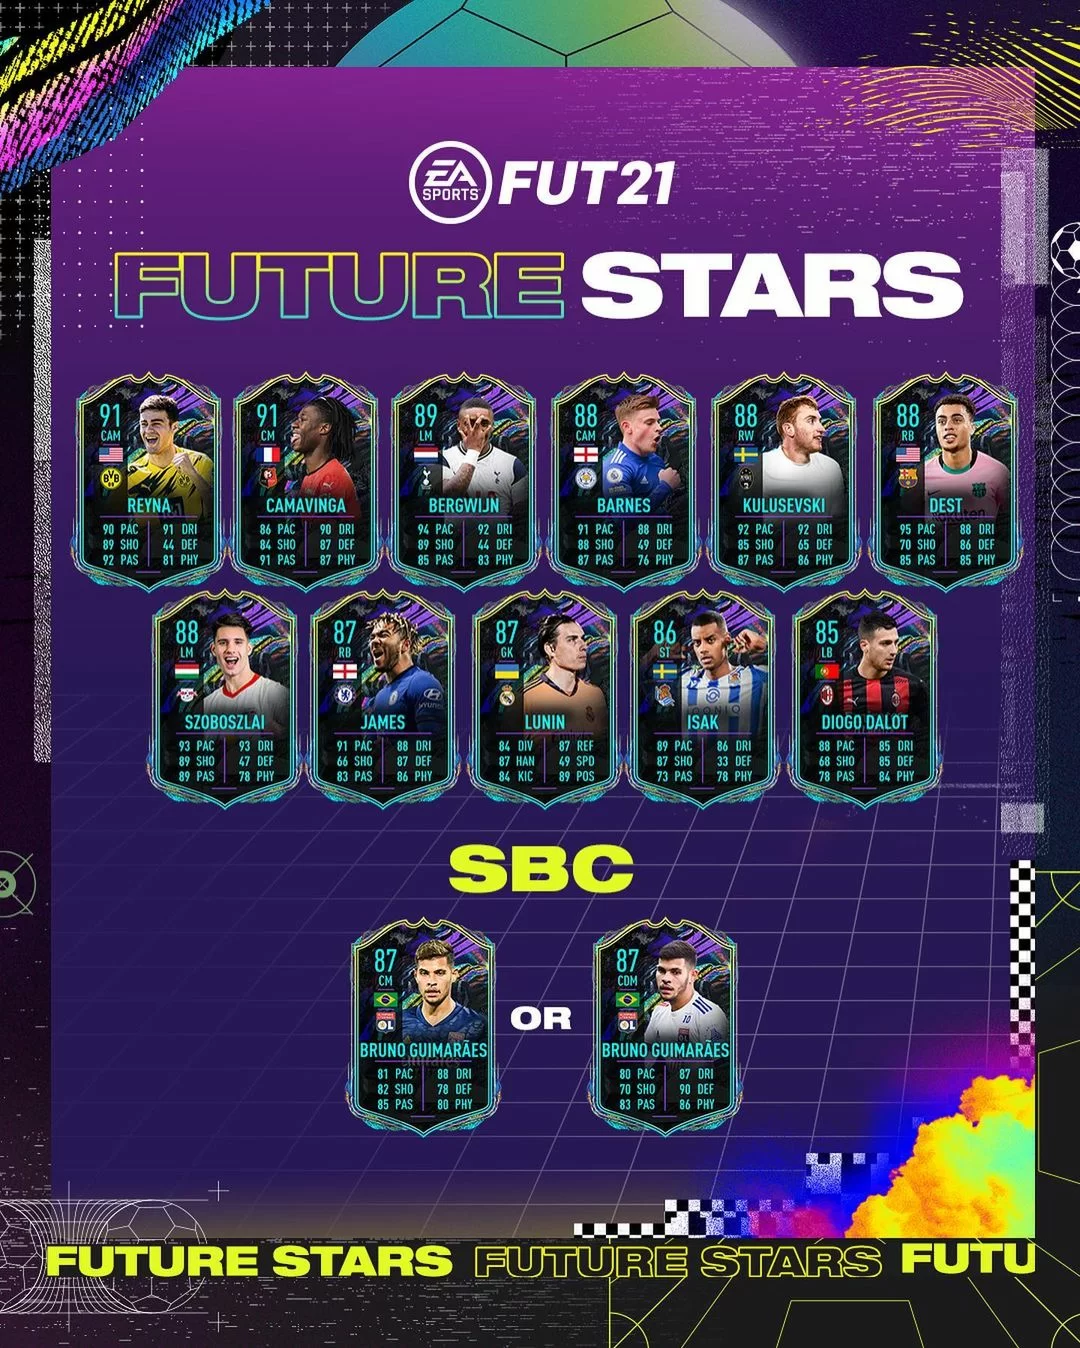 Future Stars Team 1